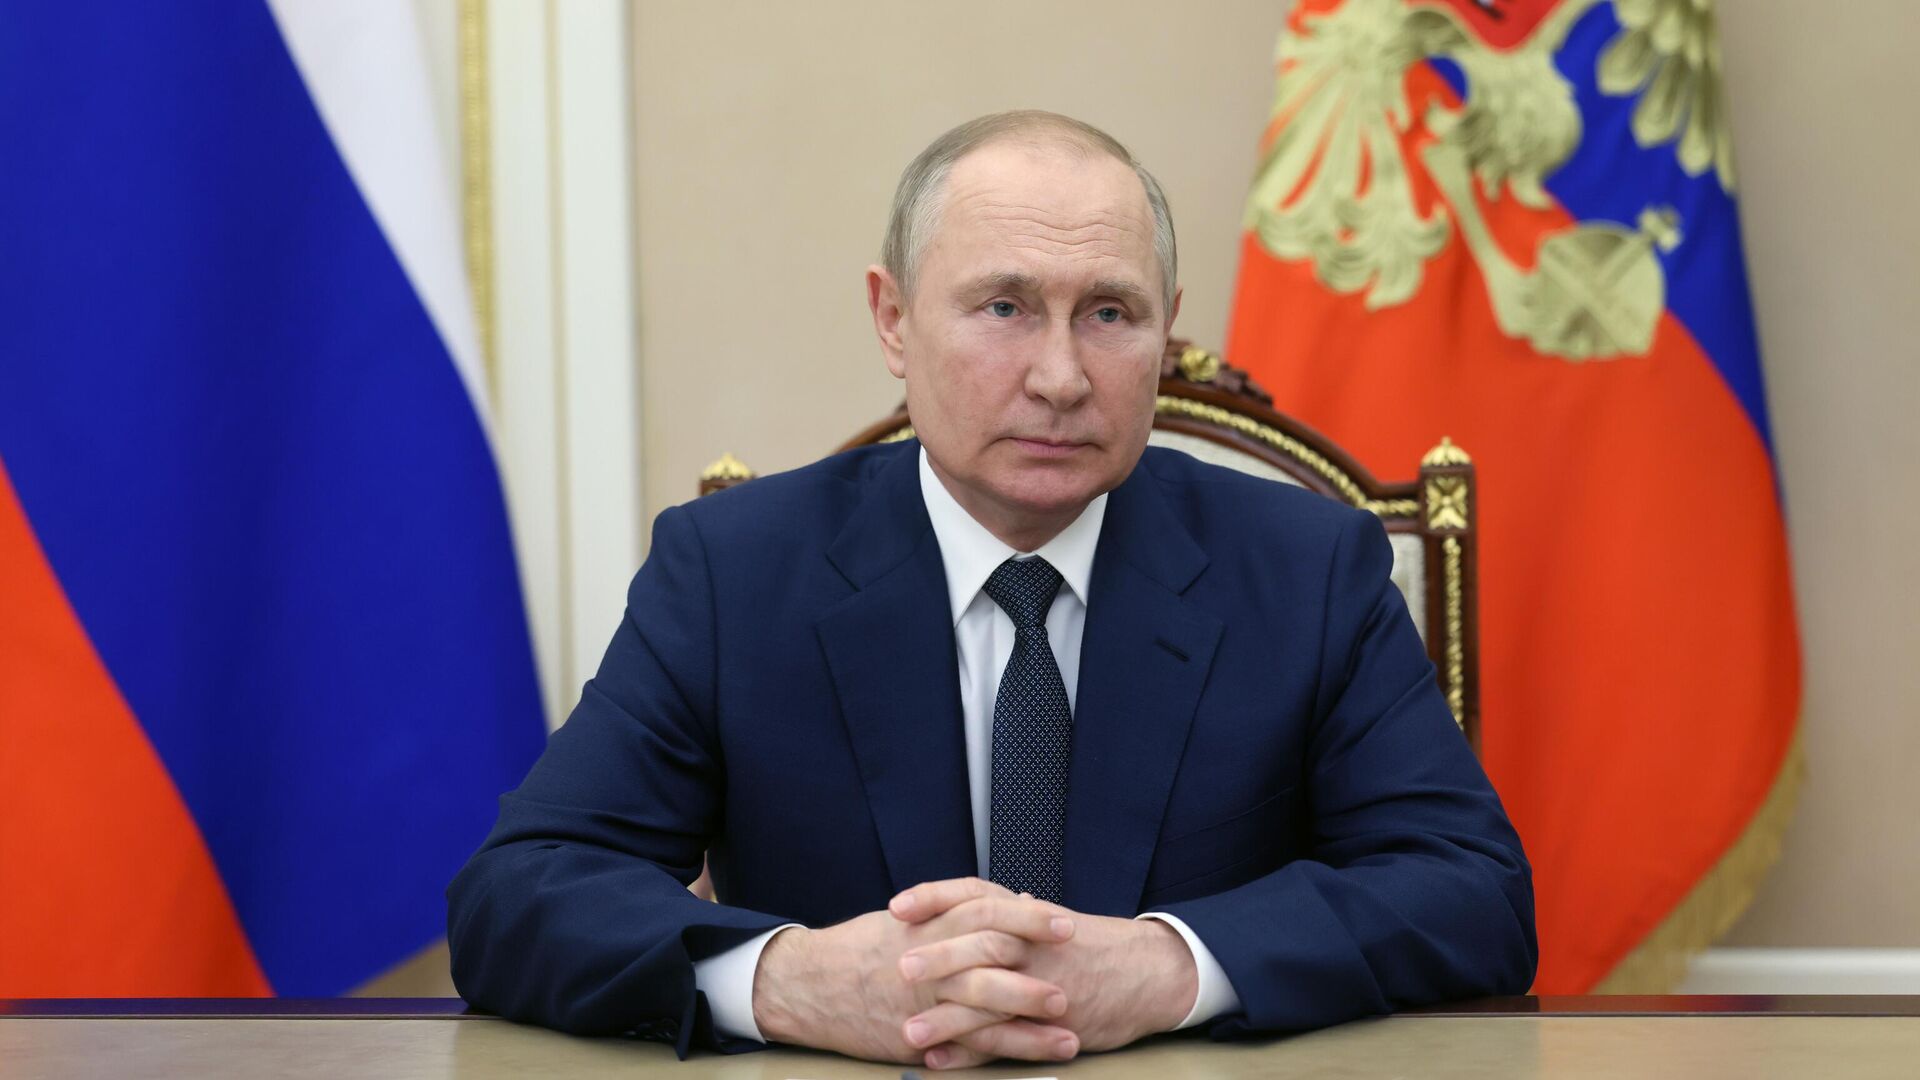 Жители Якутии поздравили президента России Владимира Путина с юбилеем